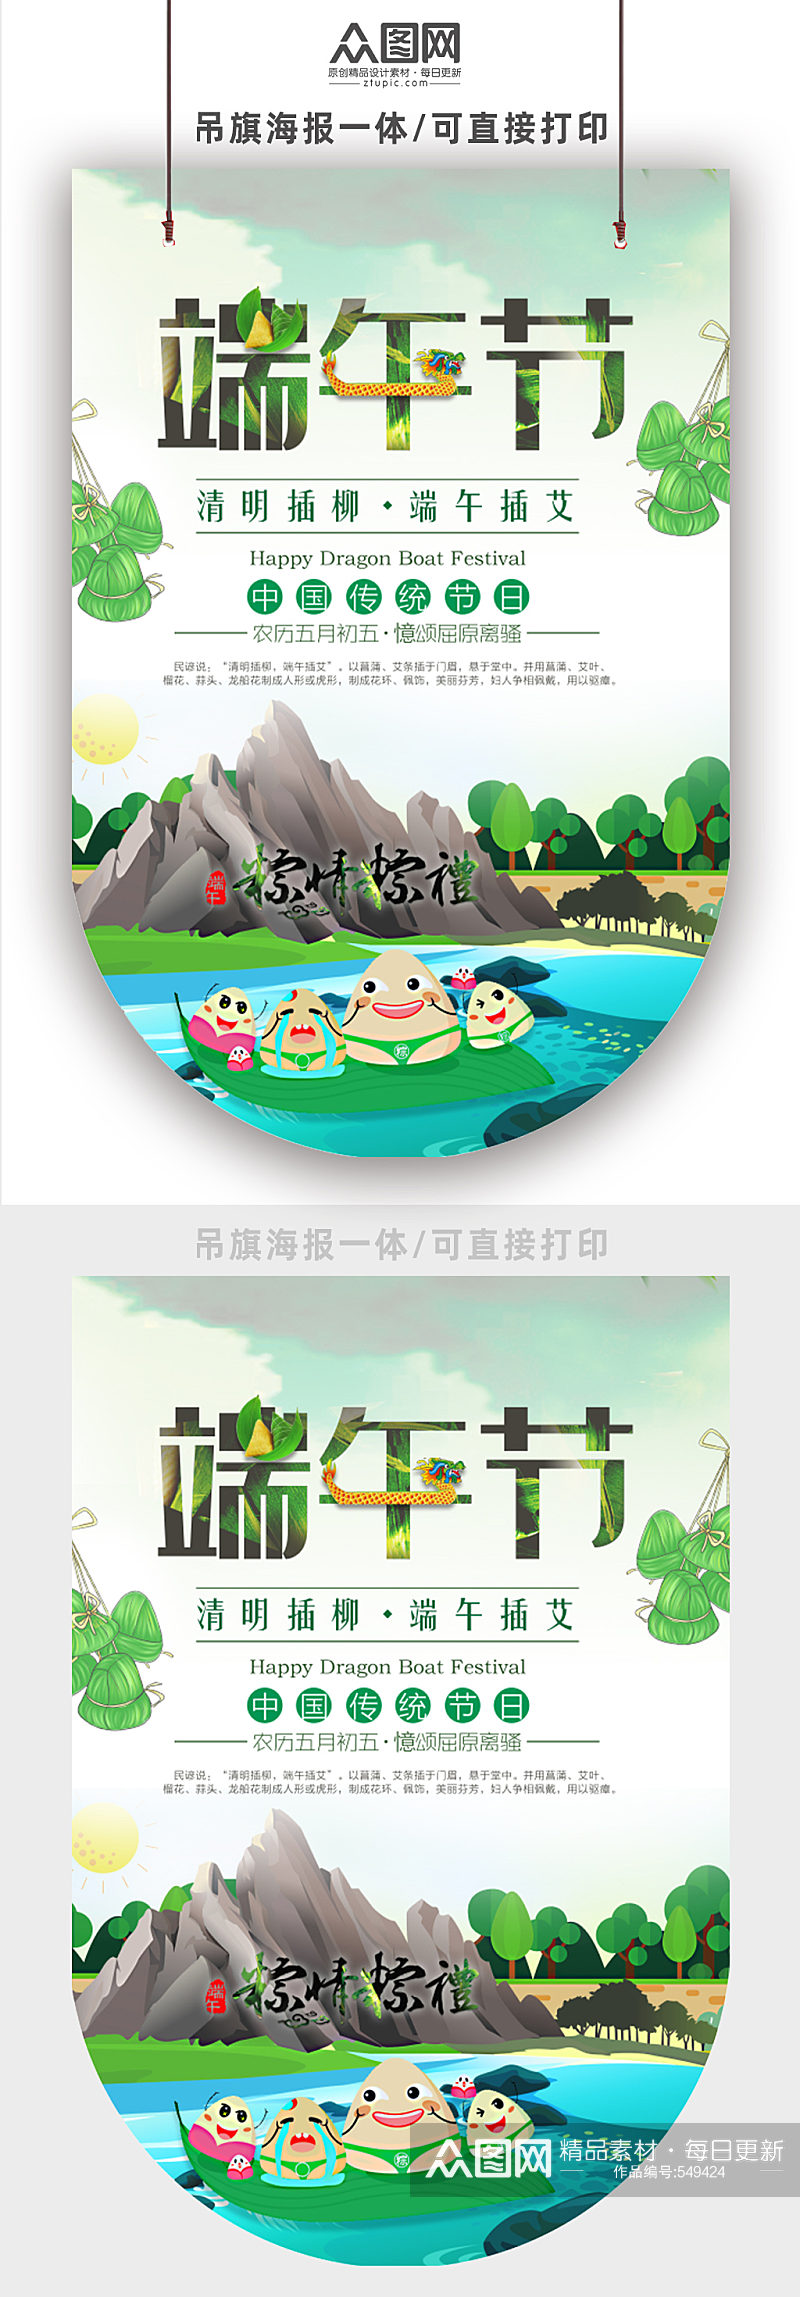 中国传统节日端午粽子可爱插画吊旗素材